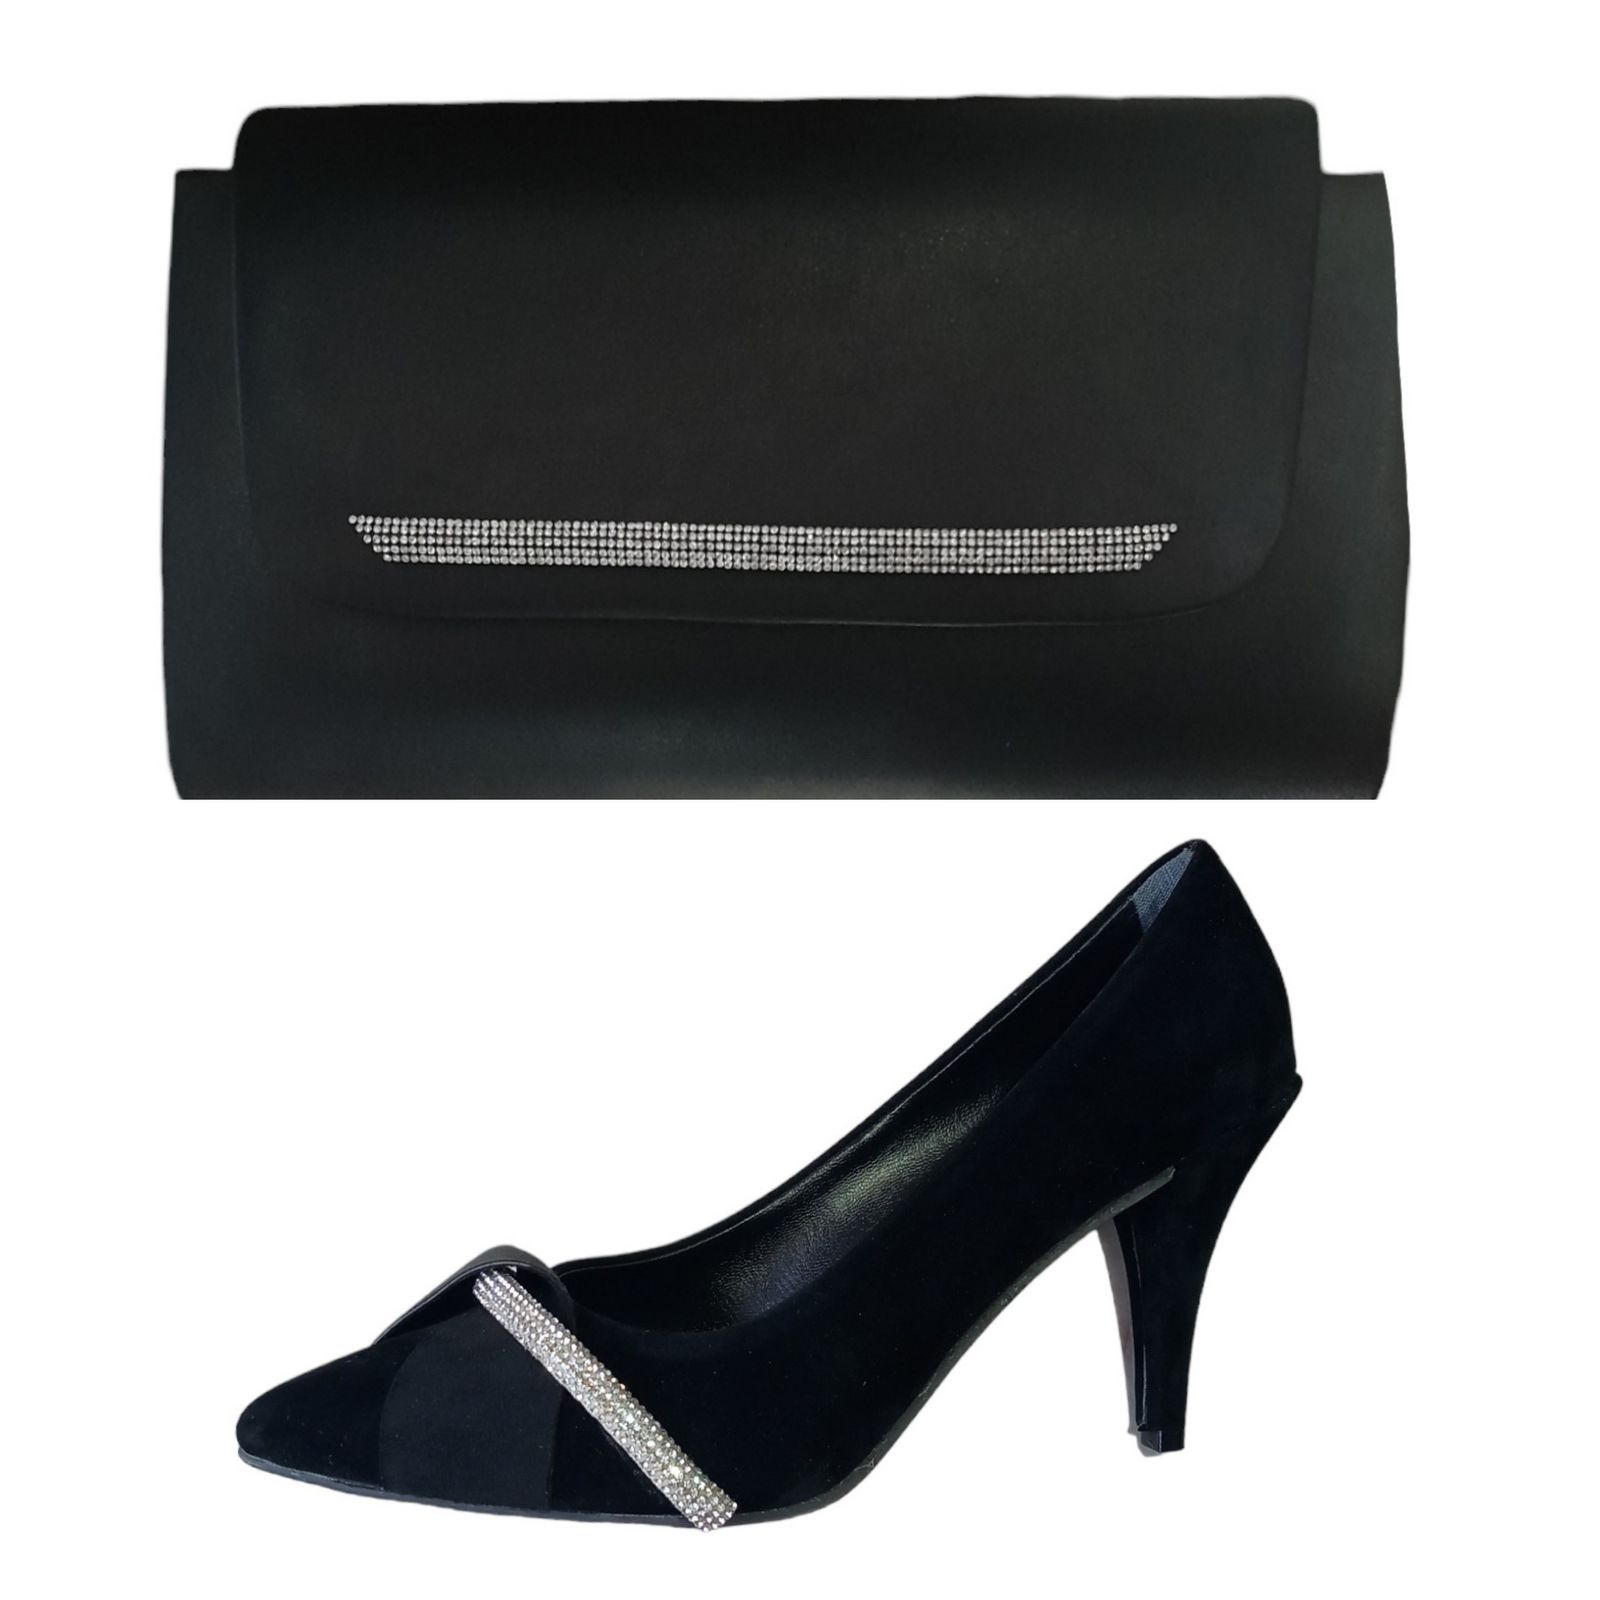 ست کیف و کفش زنانه مدل رورنی لیدی -  - 1